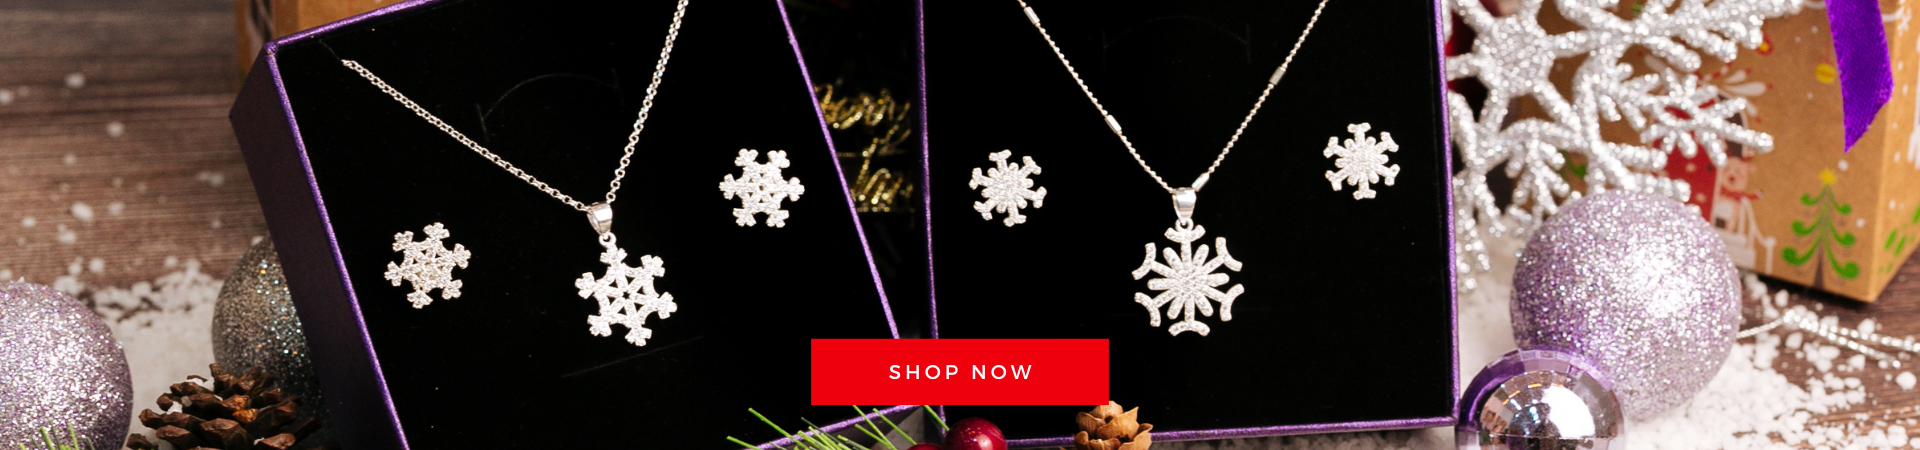 Christmas Silver Necklaces - Dây Chuyền Quà Tặng Giáng Sinh